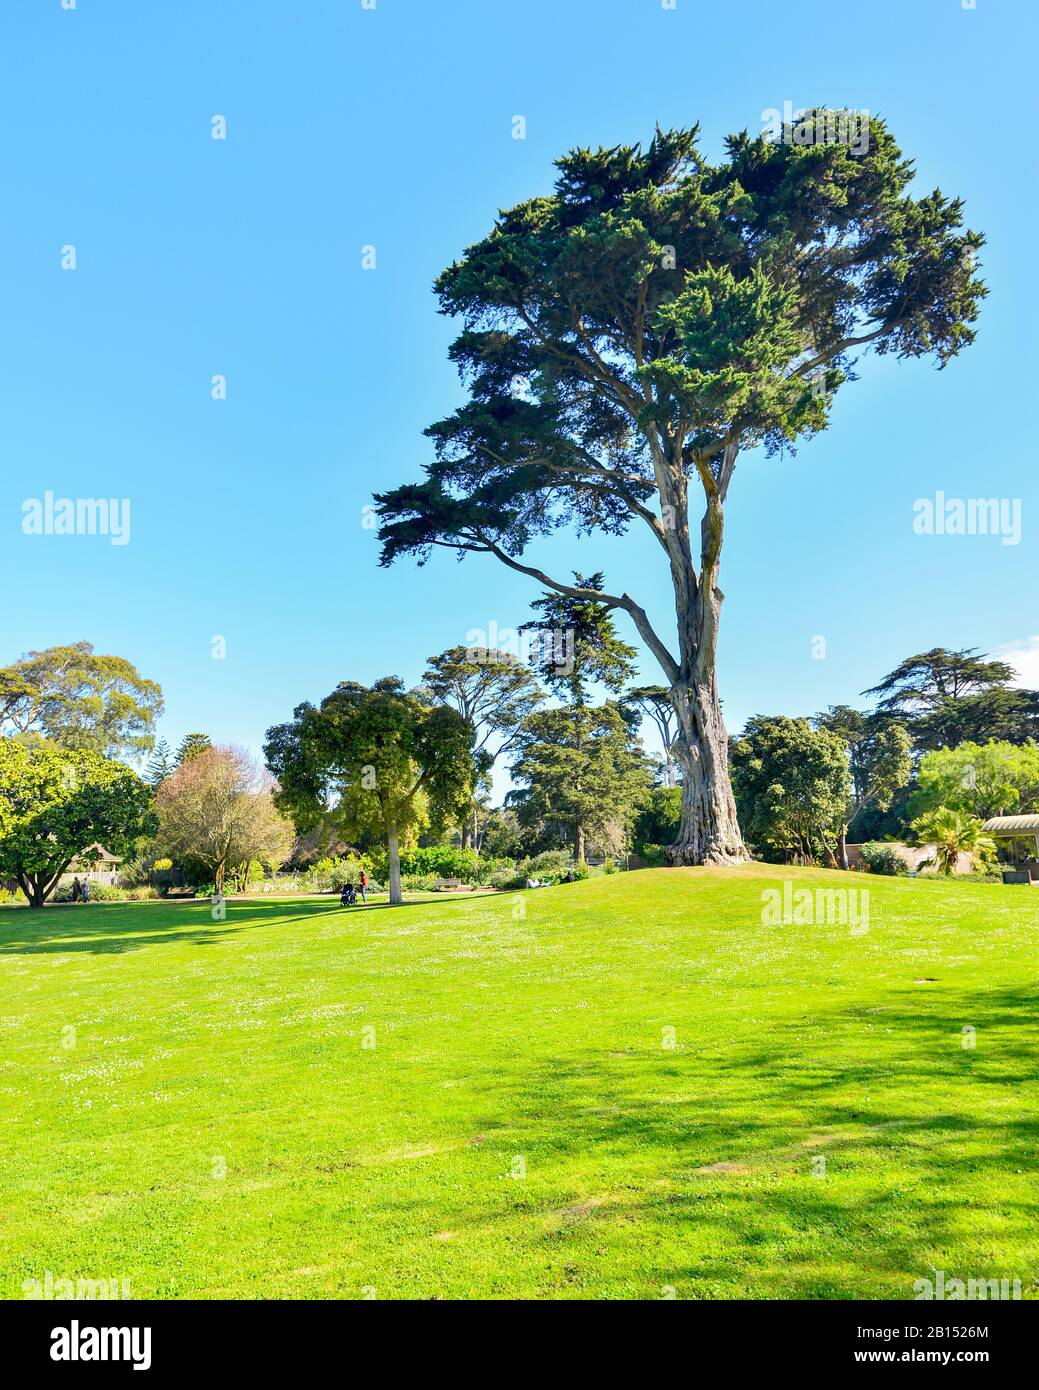 San Francisco Botanical Gardens, San Francisco, California, USA. Stock Photo